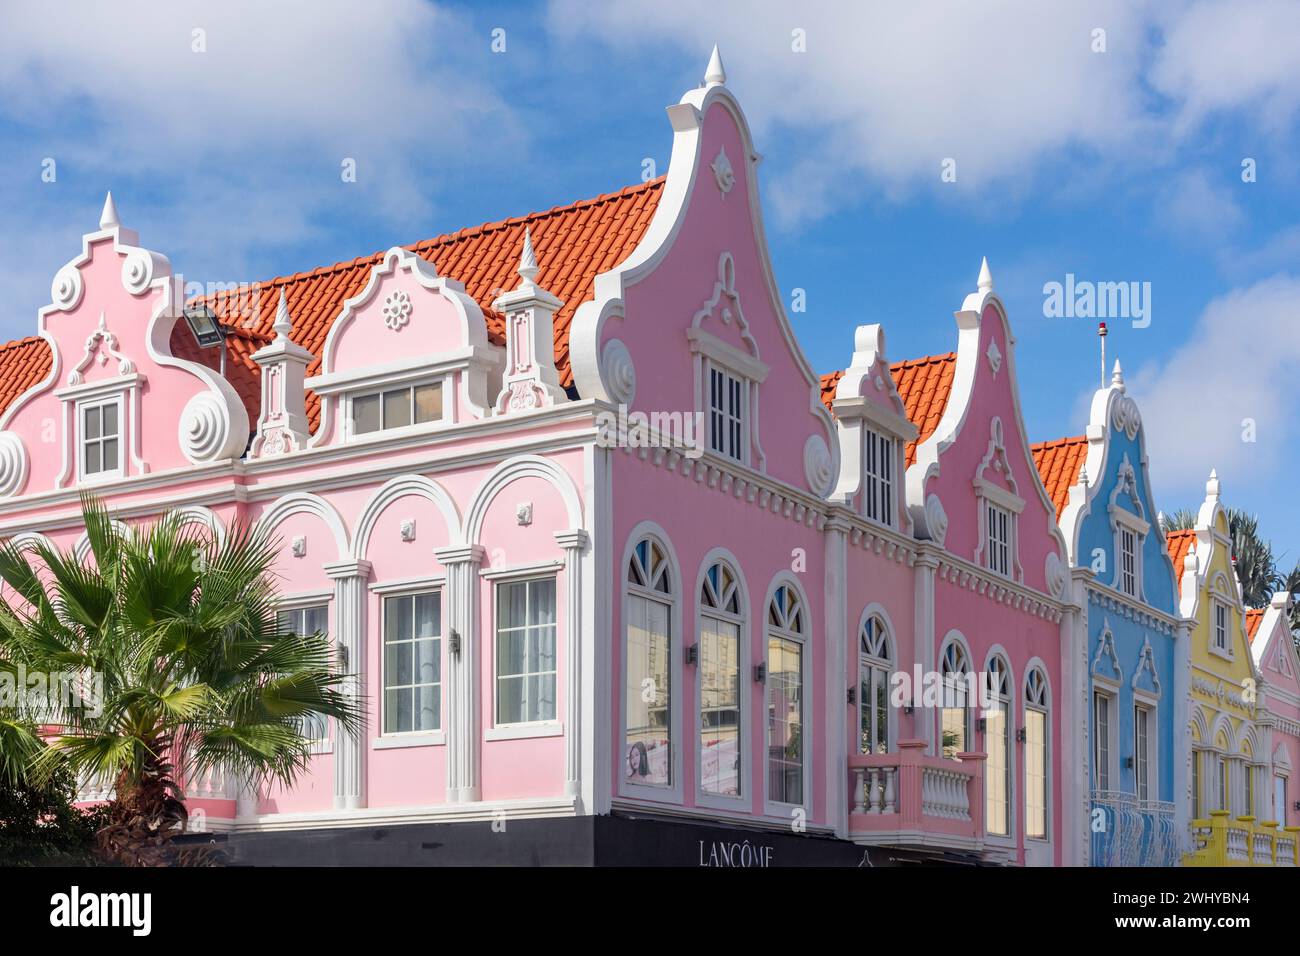 Les bâtiments de style colonial hollandais, Plaza Daniel Leo, Oranjestad, Aruba, les îles ABC sous le vent, Antilles, Caraïbes Banque D'Images